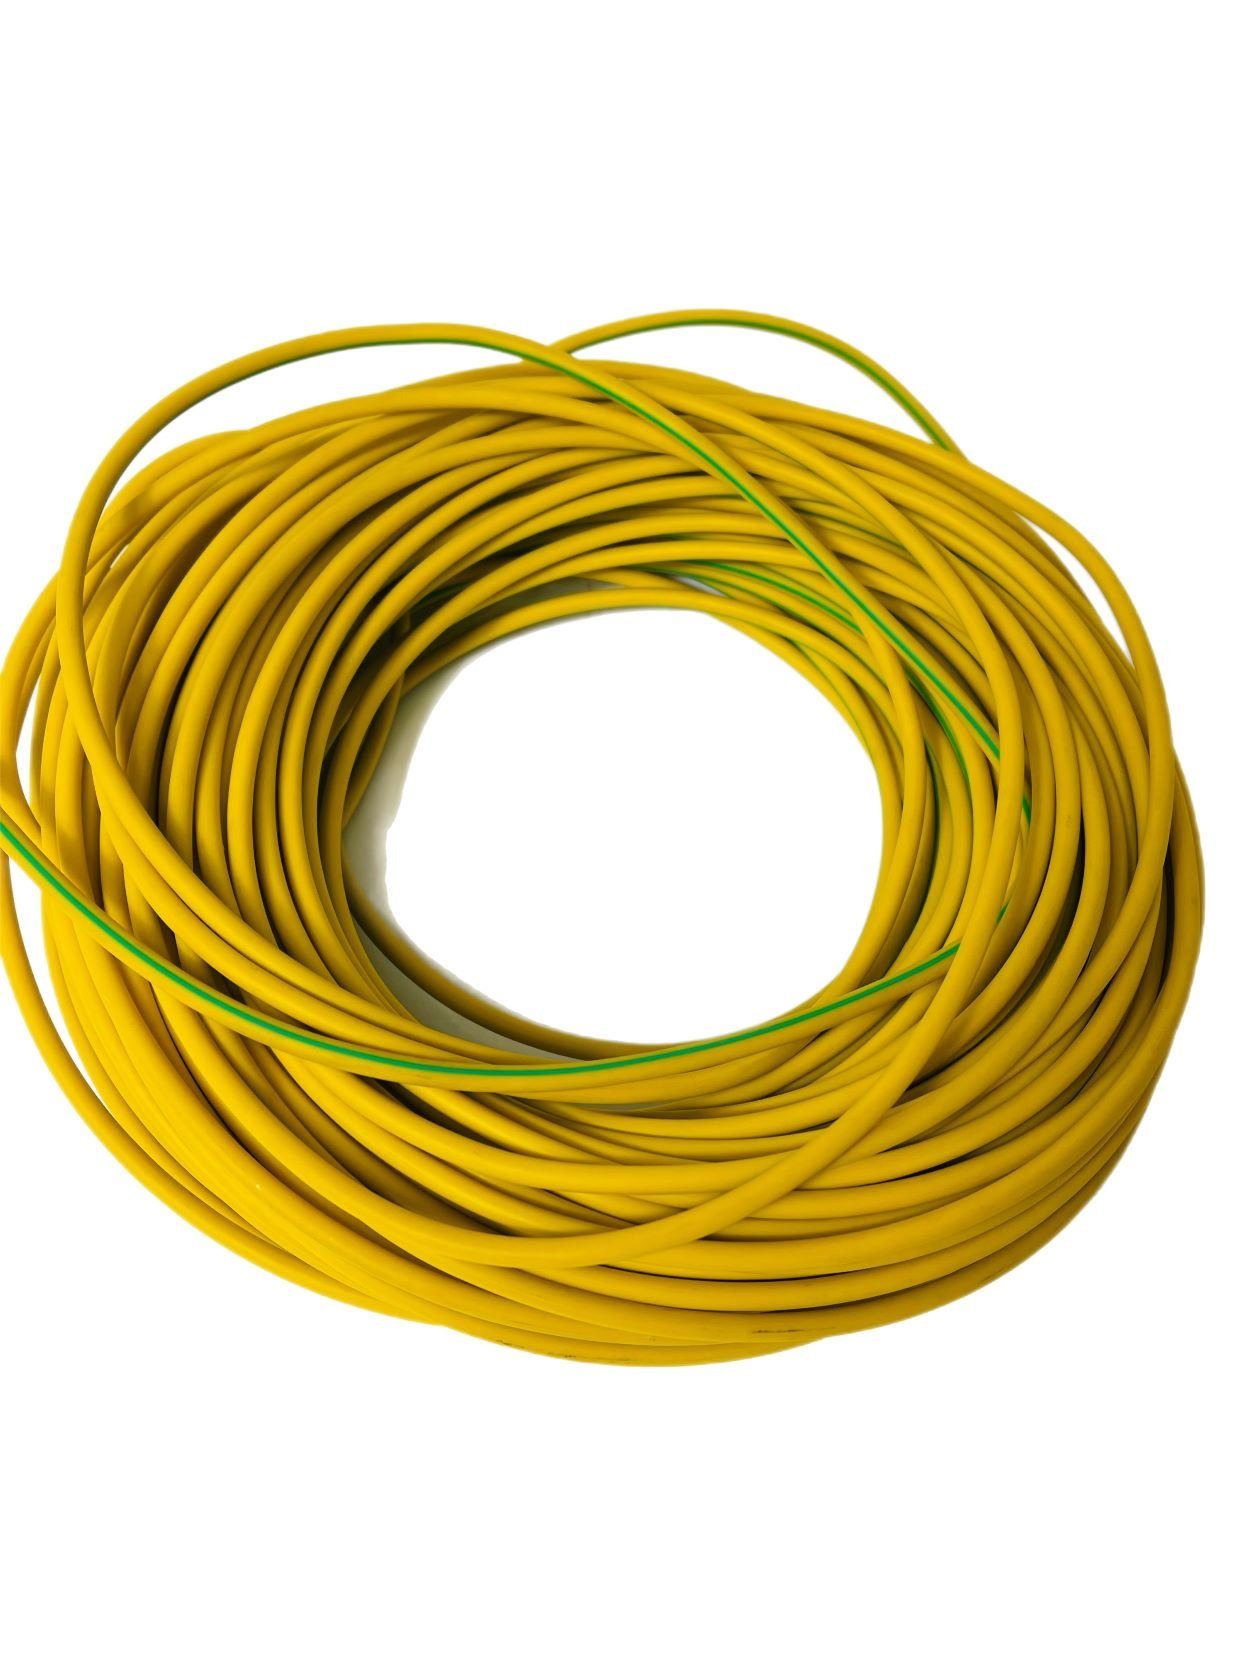 Stromkabel, VaGo-Tools H07V-K gelb-grün Stromkabel 1m H07V-K, Batteriekabel H07V-K 16mm²